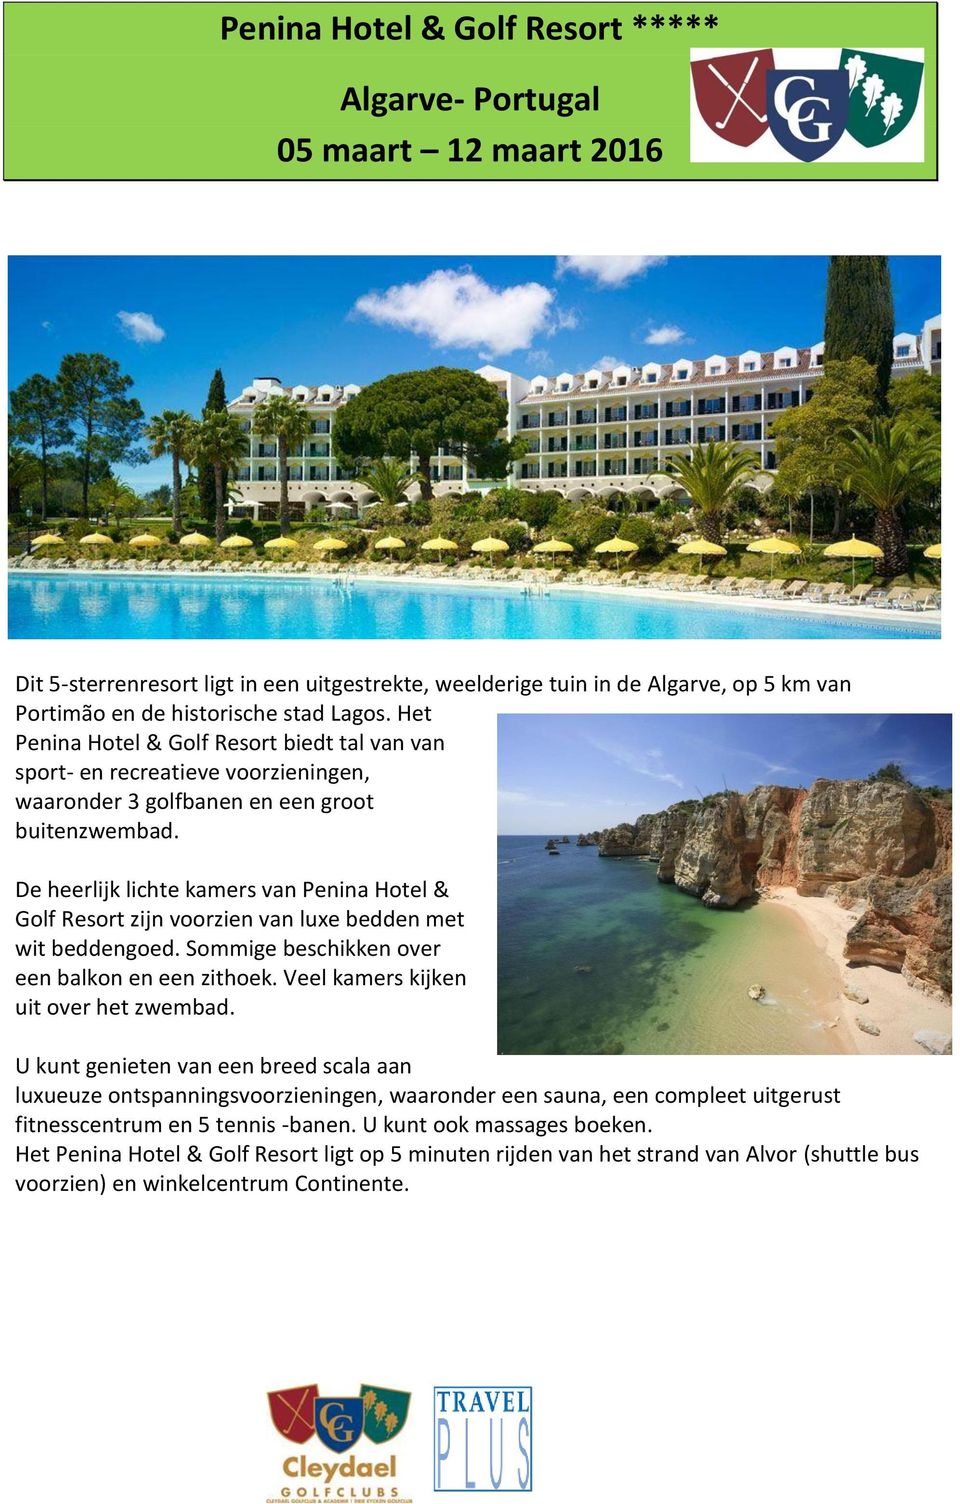 De heerlijk lichte kamers van Penina Hotel & Golf Resort zijn voorzien van luxe bedden met wit beddengoed. Sommige beschikken over een balkon en een zithoek. Veel kamers kijken uit over het zwembad.